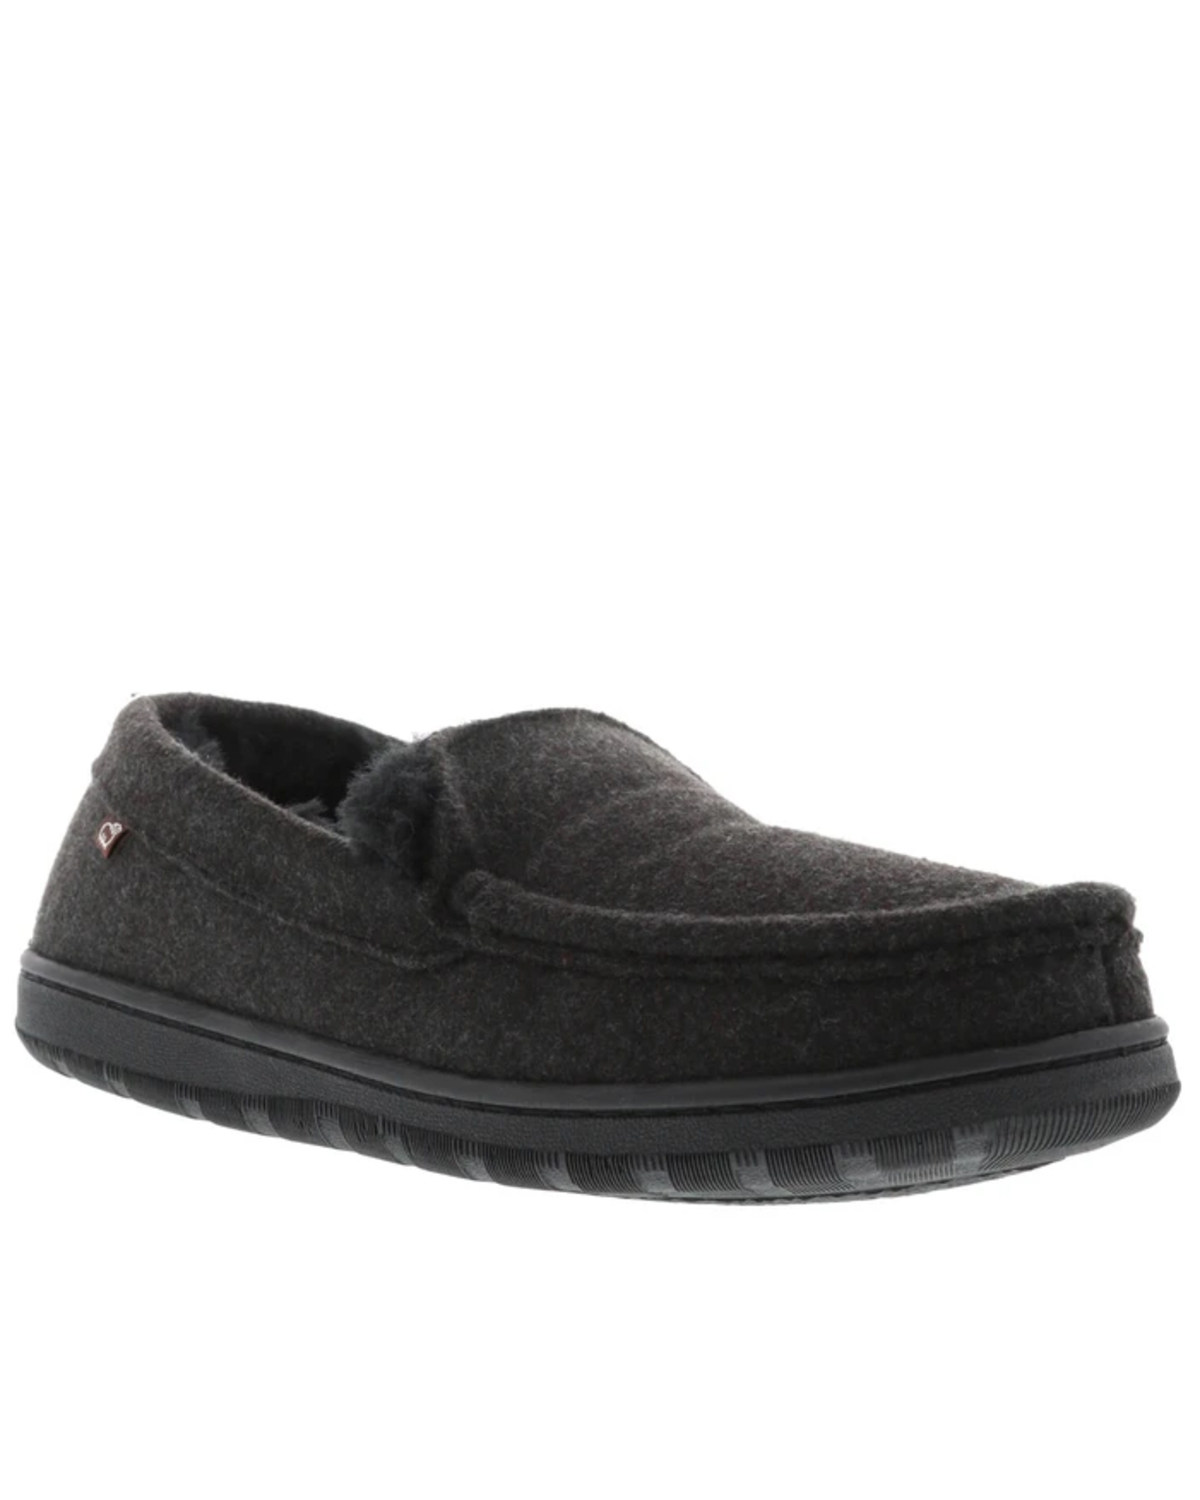 Lamo Footwear Men's Harrison Wool Slippers - Moc Toe